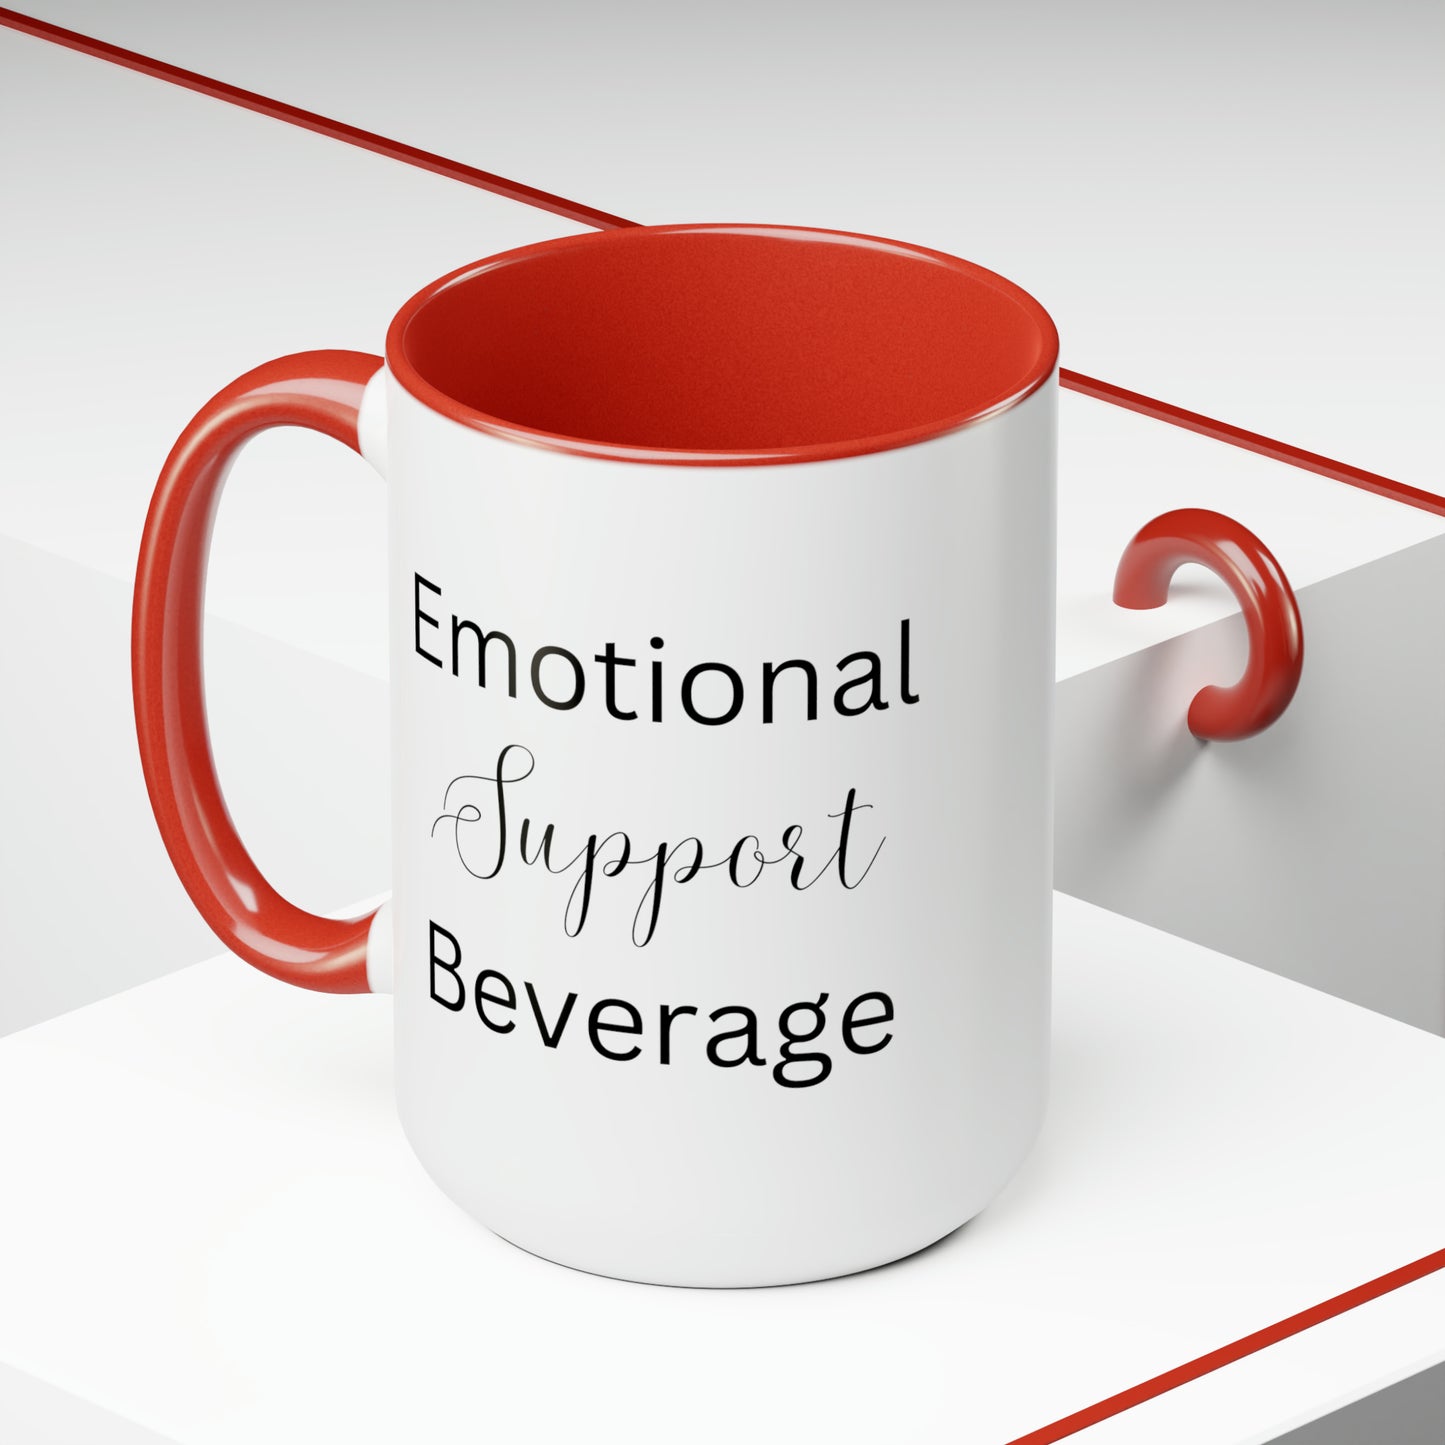 Emotional Support Beverage